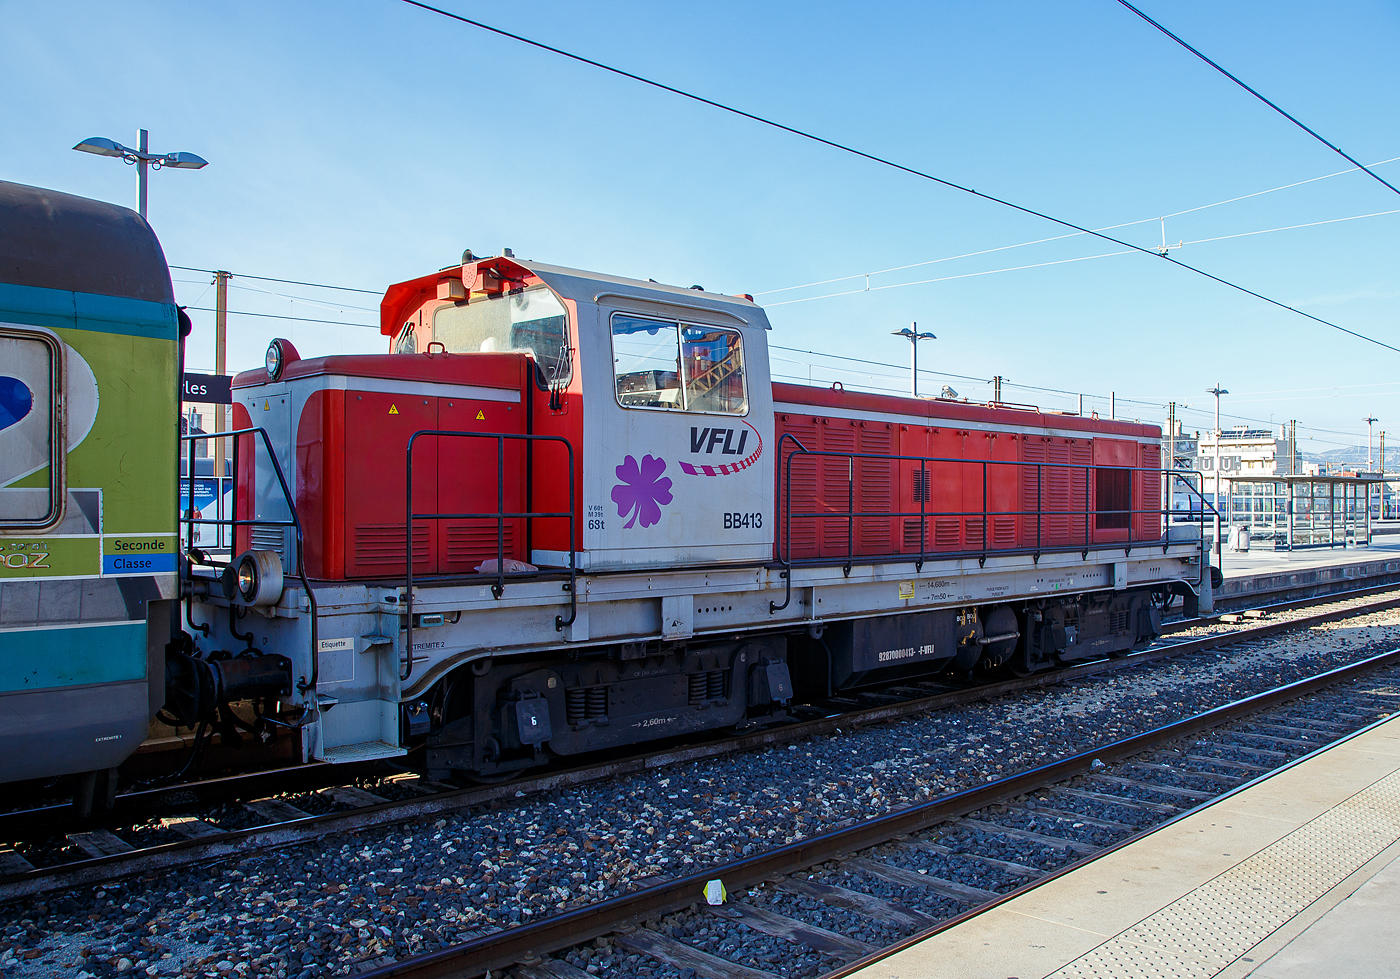 Die BB413 (92870000413-0-F-VFLI) der VFLI (Voies ferrées locales et industrielles), ex SNCF BB 63583, zieht einen (leeren) Coral Téoz Zug am 26.03.2015 aus den Bahnhof Marseille Saint-Charles in den Abstellbereich. Die VFLI Baureihe BB 400 ist eine modernisierte Lok der SNCF Baureihe BB 63500. Die BB 413 ist die ex SNCF BB 63583

Die dieselelektrischen Lokomotiven der Baureihe BB 63500 der französischen Staatsbahn SNCF, wurden zwischen 1956 und 1971 geliefert. Sie werden für alle Zuggattungen eingesetzt.

Sie wurden von Brissonneau & Lotz in Paris hergestellt, der Dieselmotor vom Typ MGO V12 SH wurde von der Société Alsacienne de Constructions Mécaniques (SACM) in Mulhouse (Mülhausen) bezogen.

TECHNISCHE DATEN der SNCF BB 63500:
Anzahl:  580
Spurweite:  1.435 mm (Normalspur)
Achsformel:  Bo'Bo'
Länge über Puffer:  14.680 mm
Breite: 2.800 mm
Höhe: 3.980 mm
Drehzapfenabstand: 7.500 mm
Achsabstand im Drehgestell: 2.600 mm
Dienstgewicht:  68 t
Höchstgeschwindigkeit: 90 km/h
Installierte Leistung:  450 kW
Treibraddurchmesser:  1.050 mm
Dieselmotor: V12-Zylinder-Dieselmotor, Typ SACM MGO V12 SH
Tankinhalt:  3.000 l
Verbrauch: ca. 3 l/km
Antrieb:  dieselelektrisch
Fahrmotoren: 4 Stück 453 29 BL 170 V fremdbelüftet 
Kupplungstyp:  Schraubenkupplung